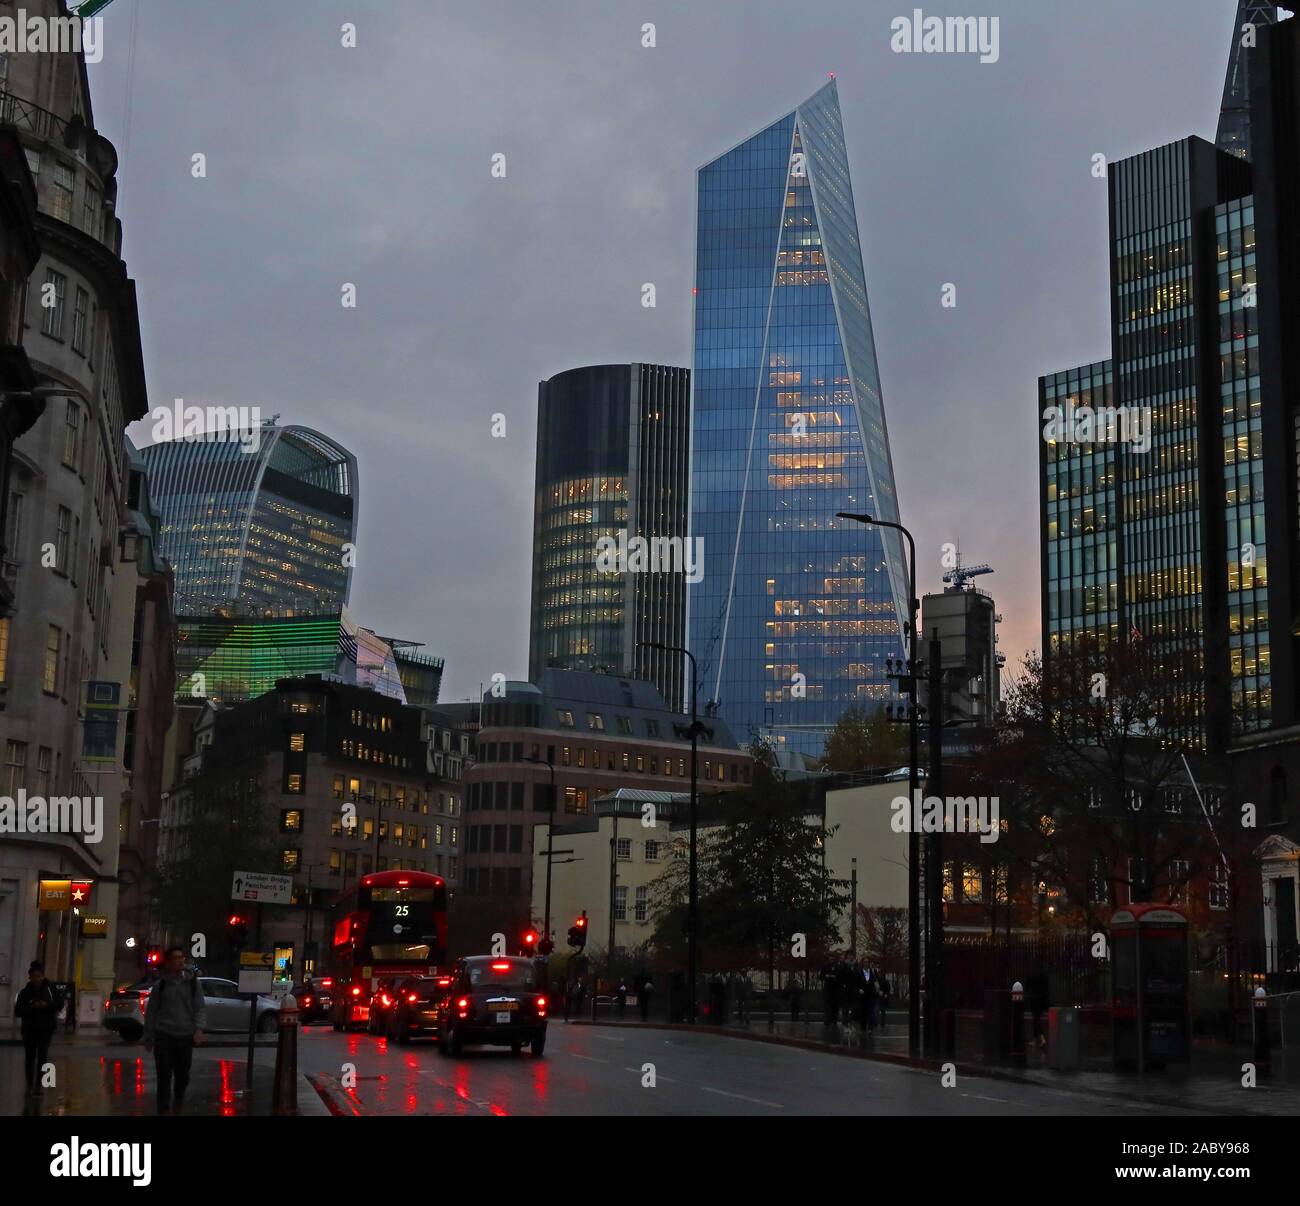 Skyline der Stadt London, von Leadenhall Street, Büros, Wolkenkratzer, Architektur, in der Abenddämmerung, London, England, Großbritannien, EC3A 8BN Stockfoto